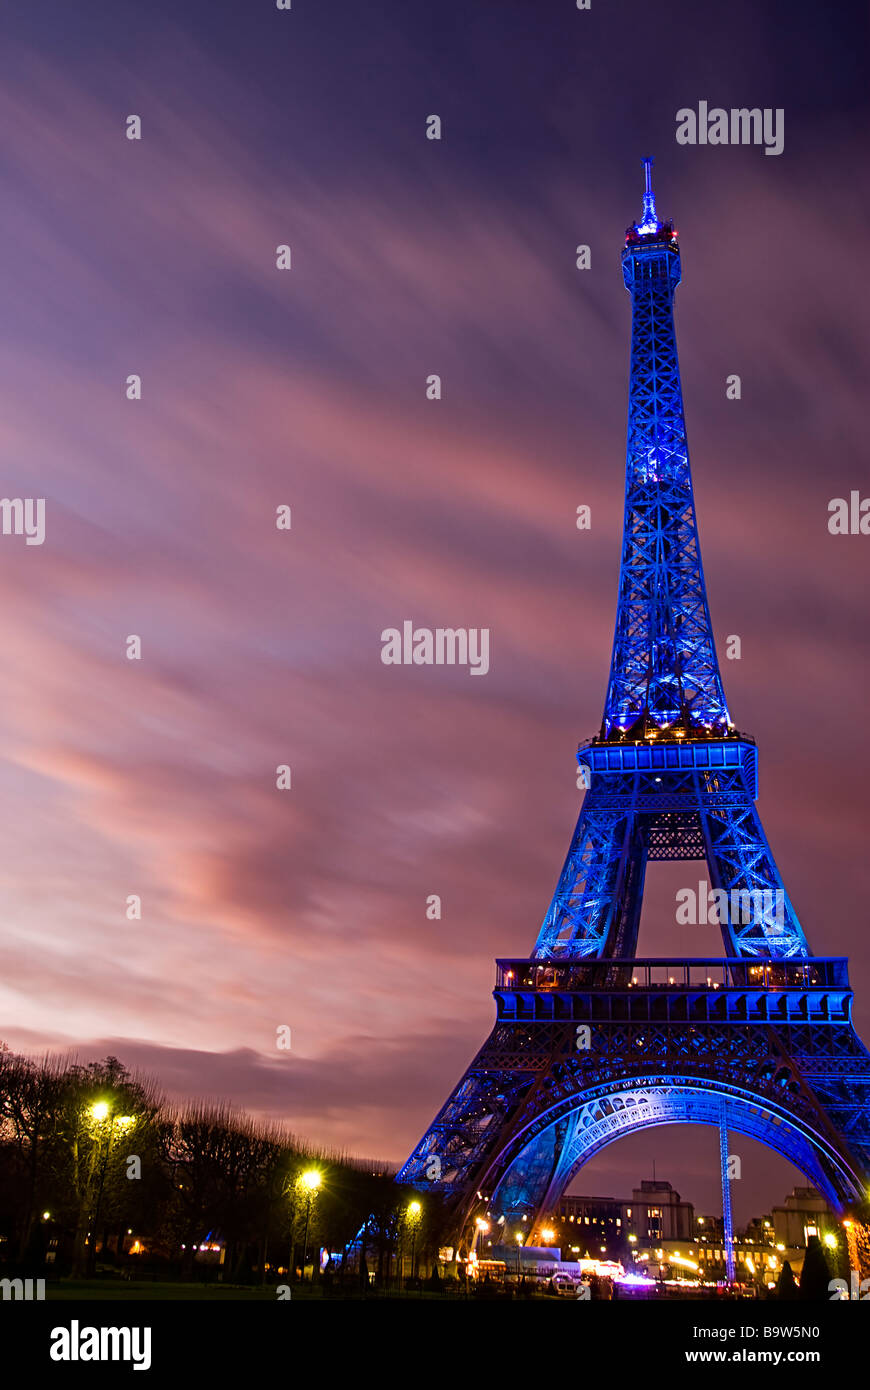 Vue sur la Tour Eiffel illuminée en bleu affichant le symbole européen en raison de la présidence française de l'Union européenne Banque D'Images